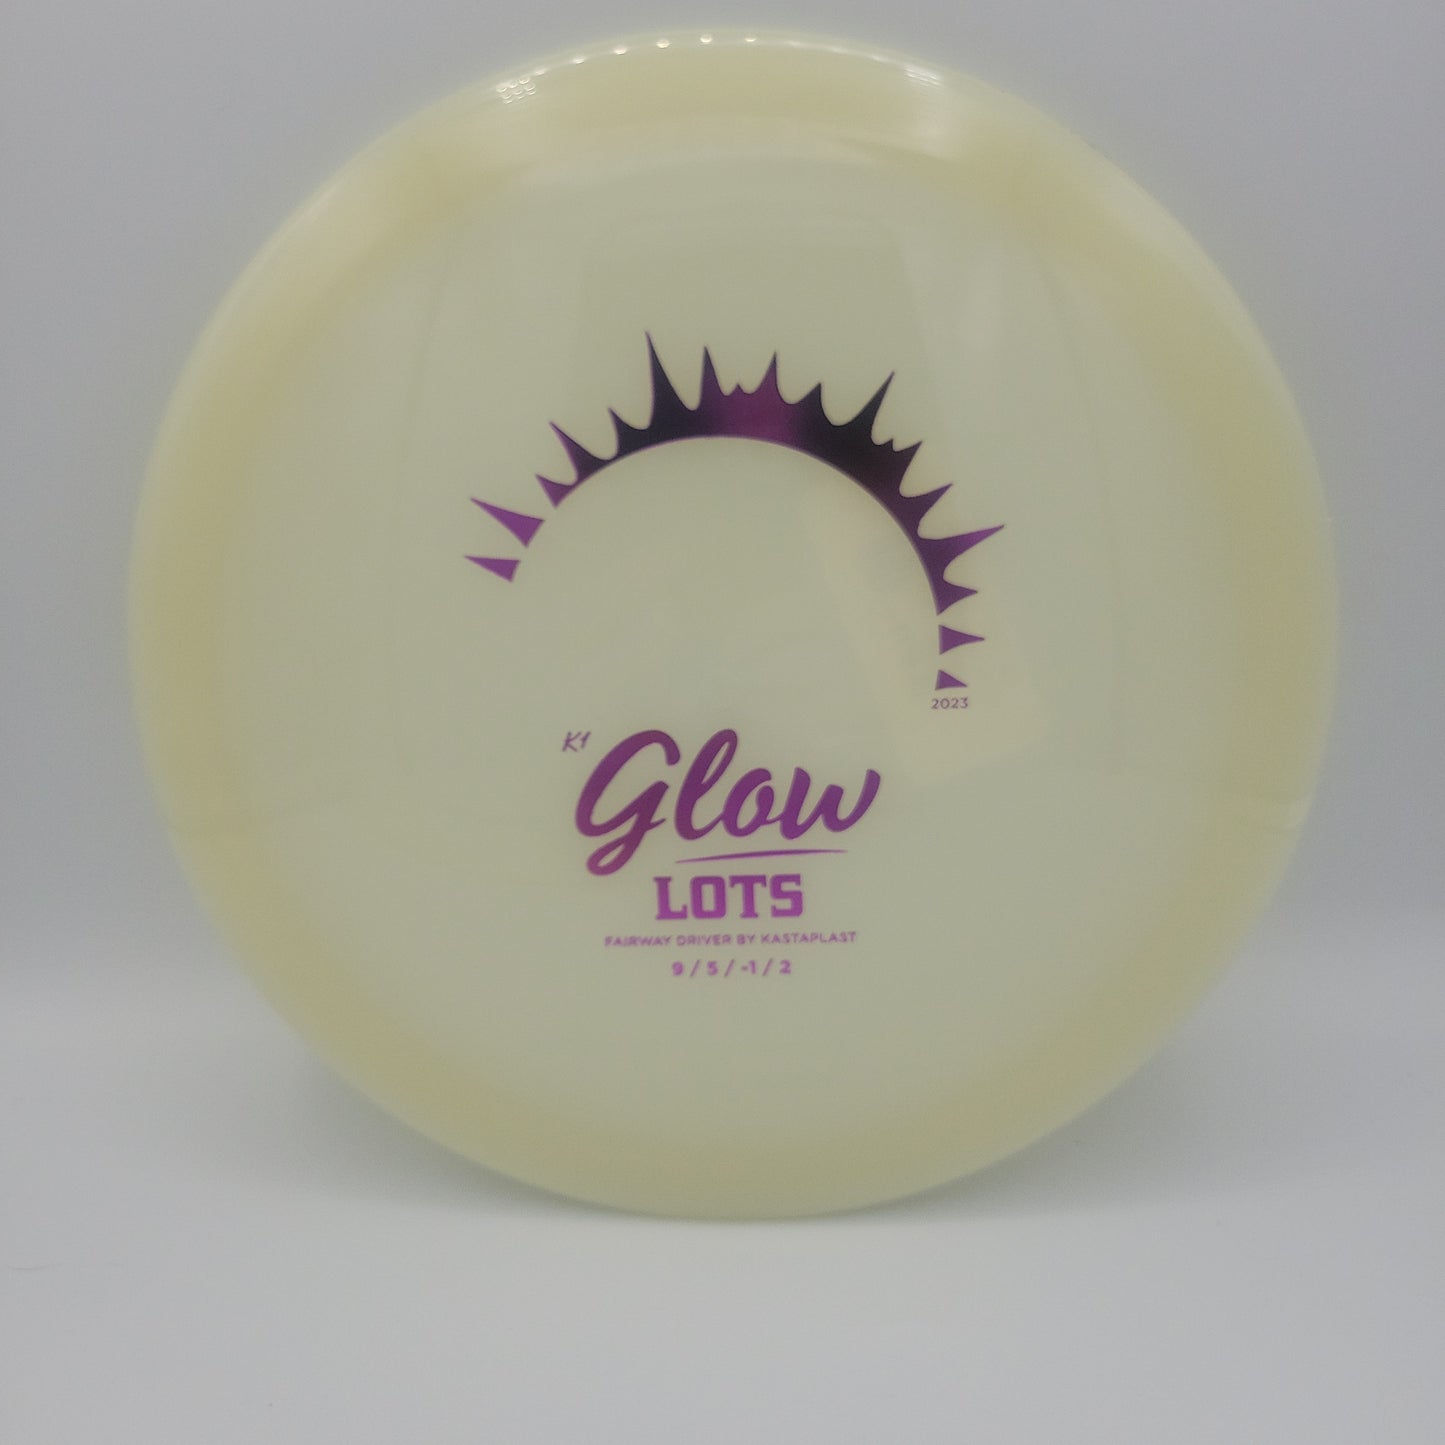 GLOW Lots 9/5/-1/2